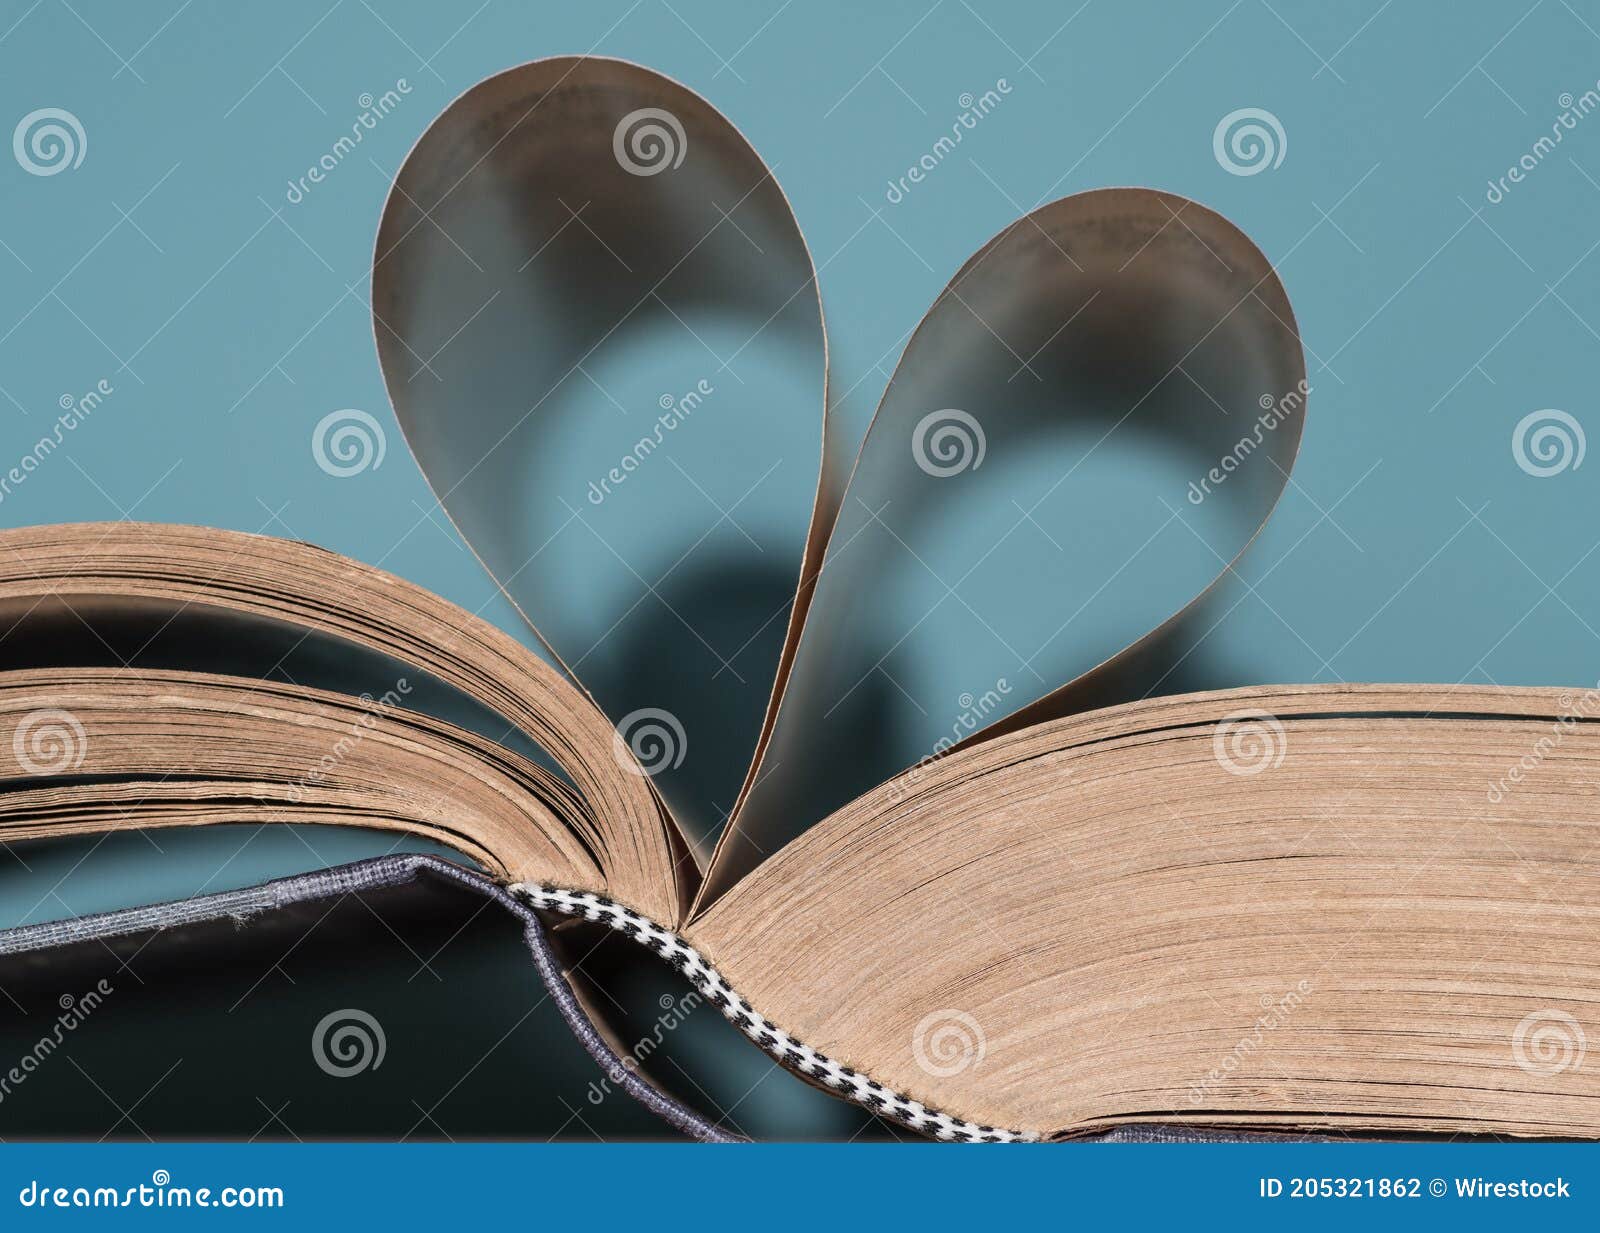 Captura De Pantalla De Un Libro De Páginas En Forma De Corazón Con Fondo  Azul Foto de archivo - Imagen de fondo, libro: 205321862